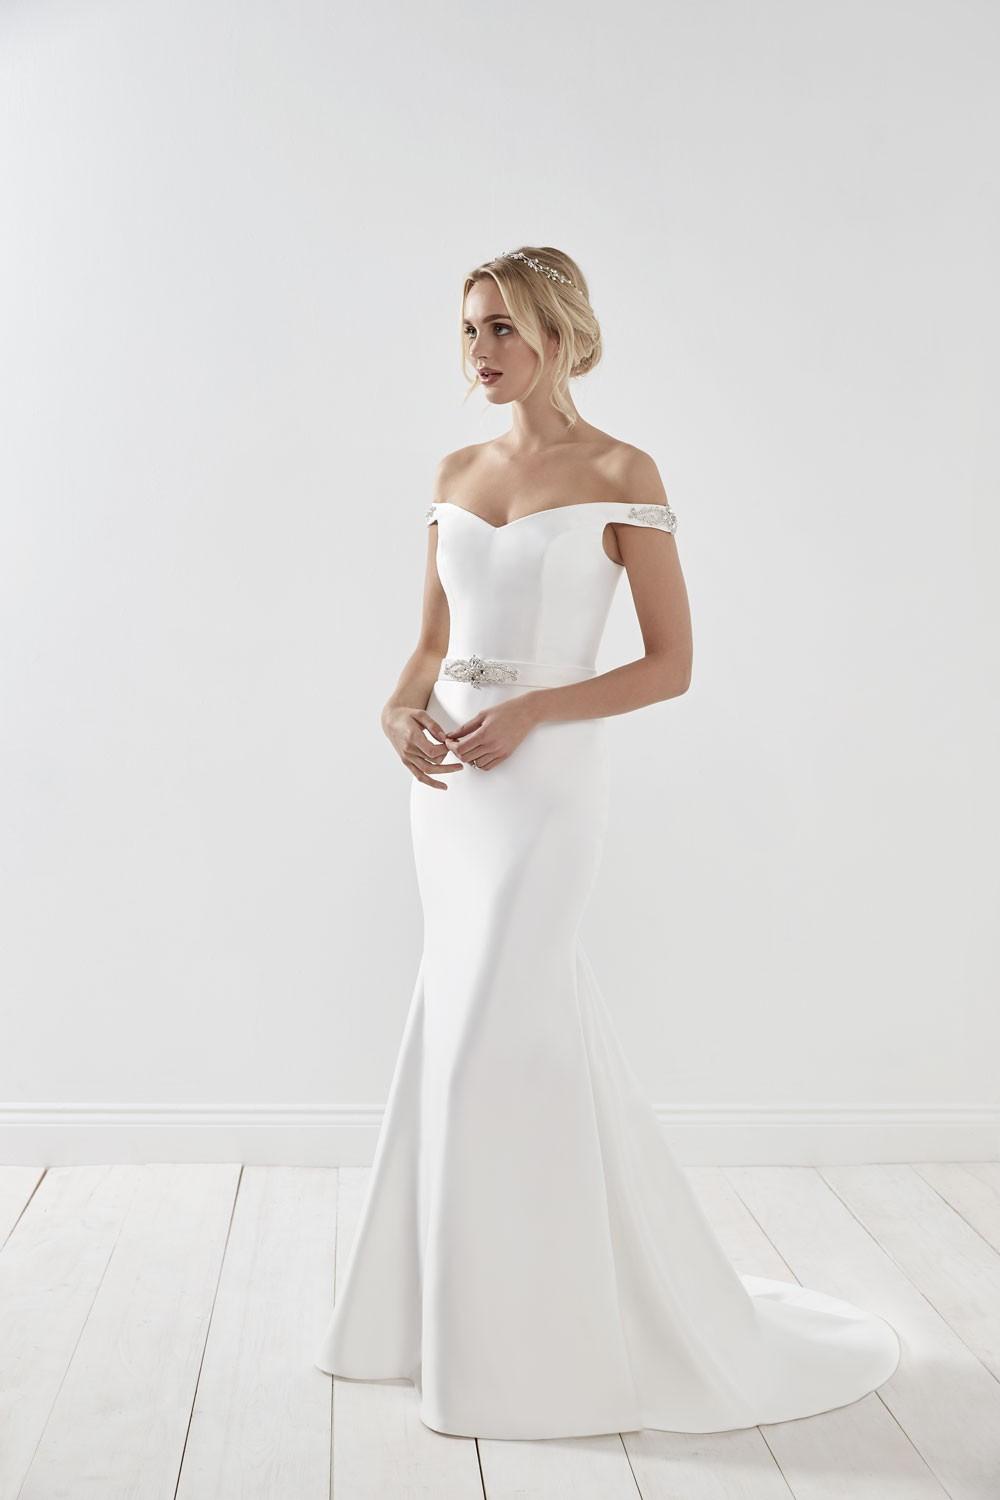 Elegant Wedding Dresses - hitched.co.uk - hitched.co.uk